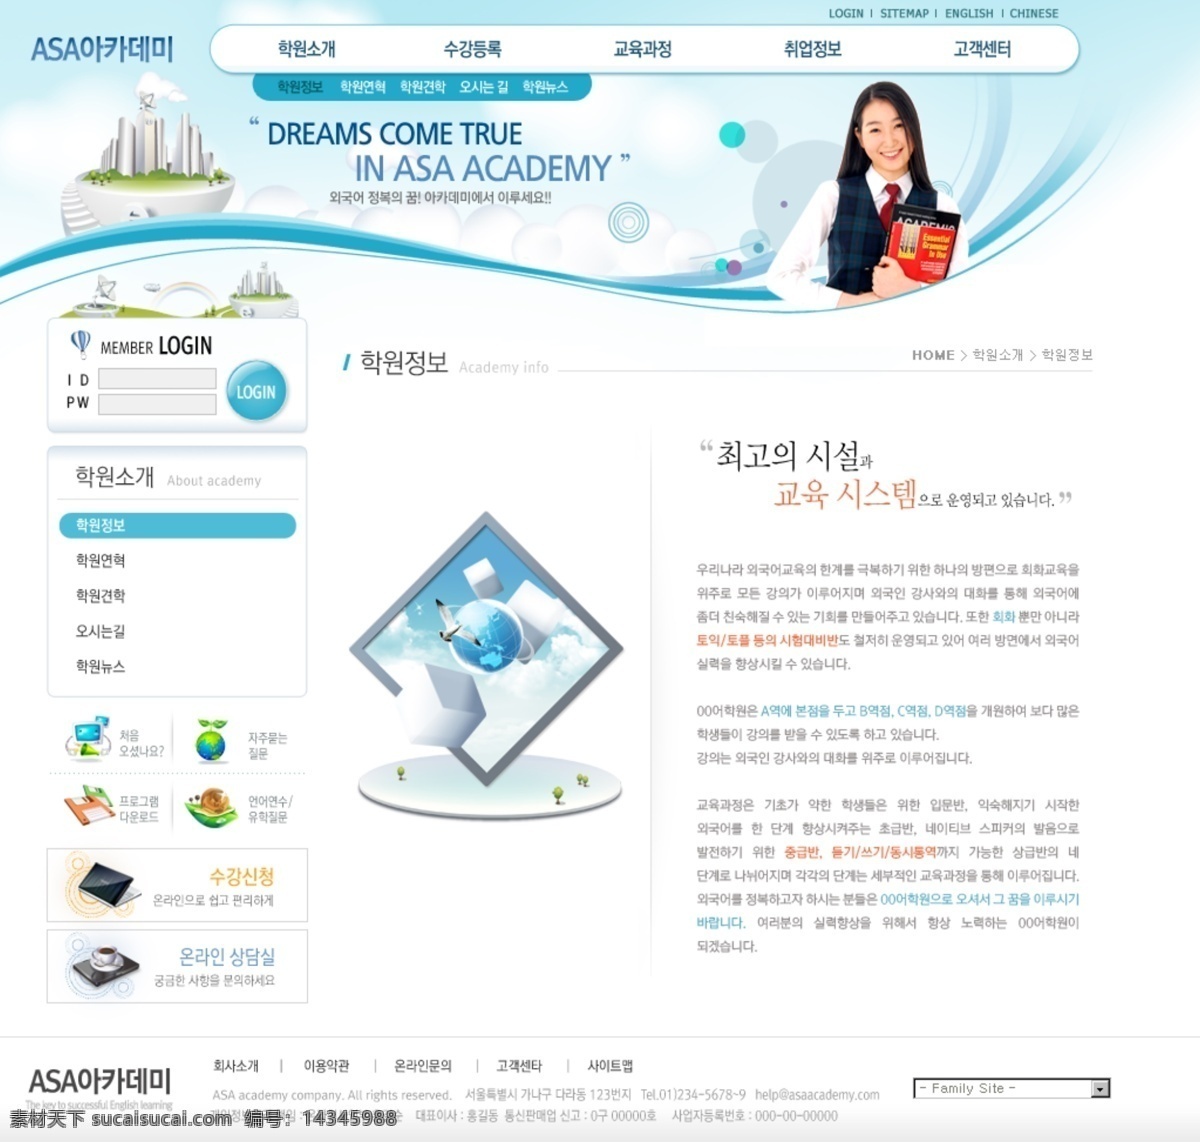 韩国 学校 网站 分层 模板 海鸥 图标 女学生 美女 楼 花纹 网站设计 源文件